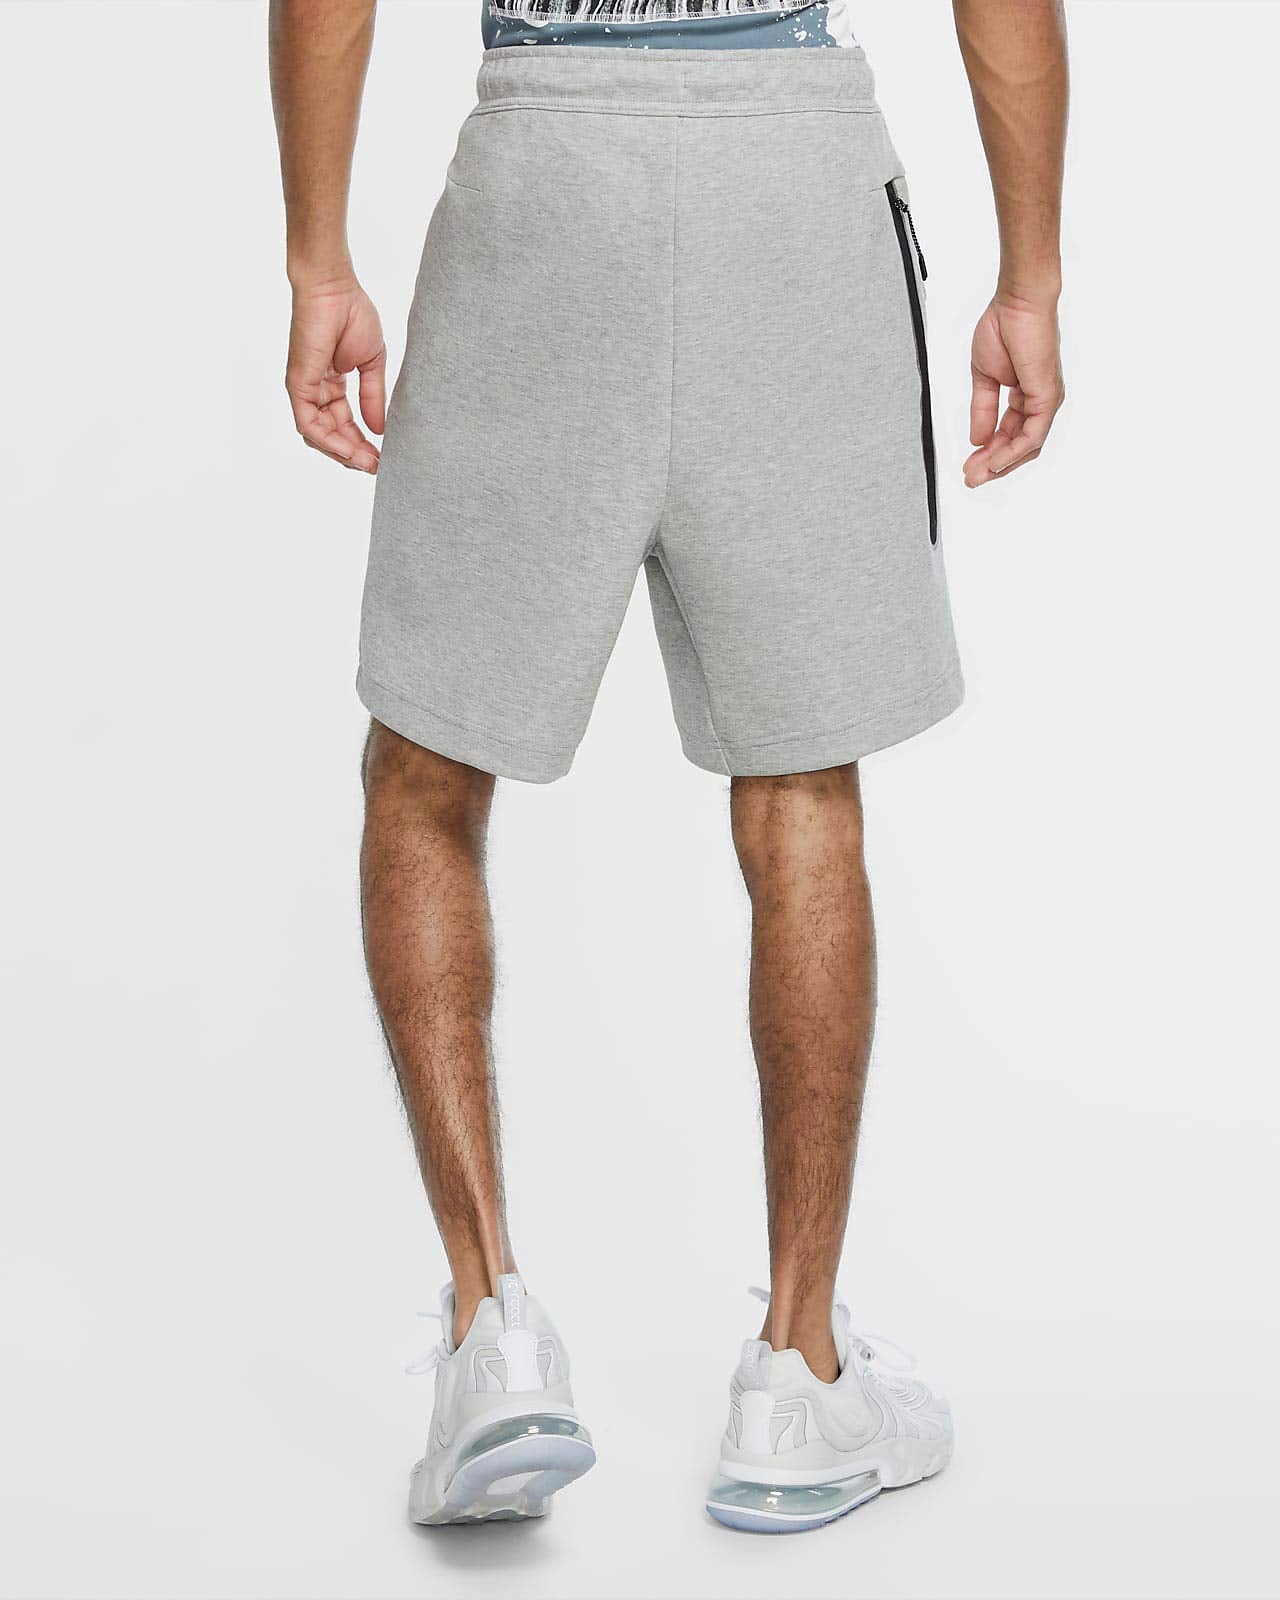 Nike Men's Tech Fleece Shorts - Sneakermaniany